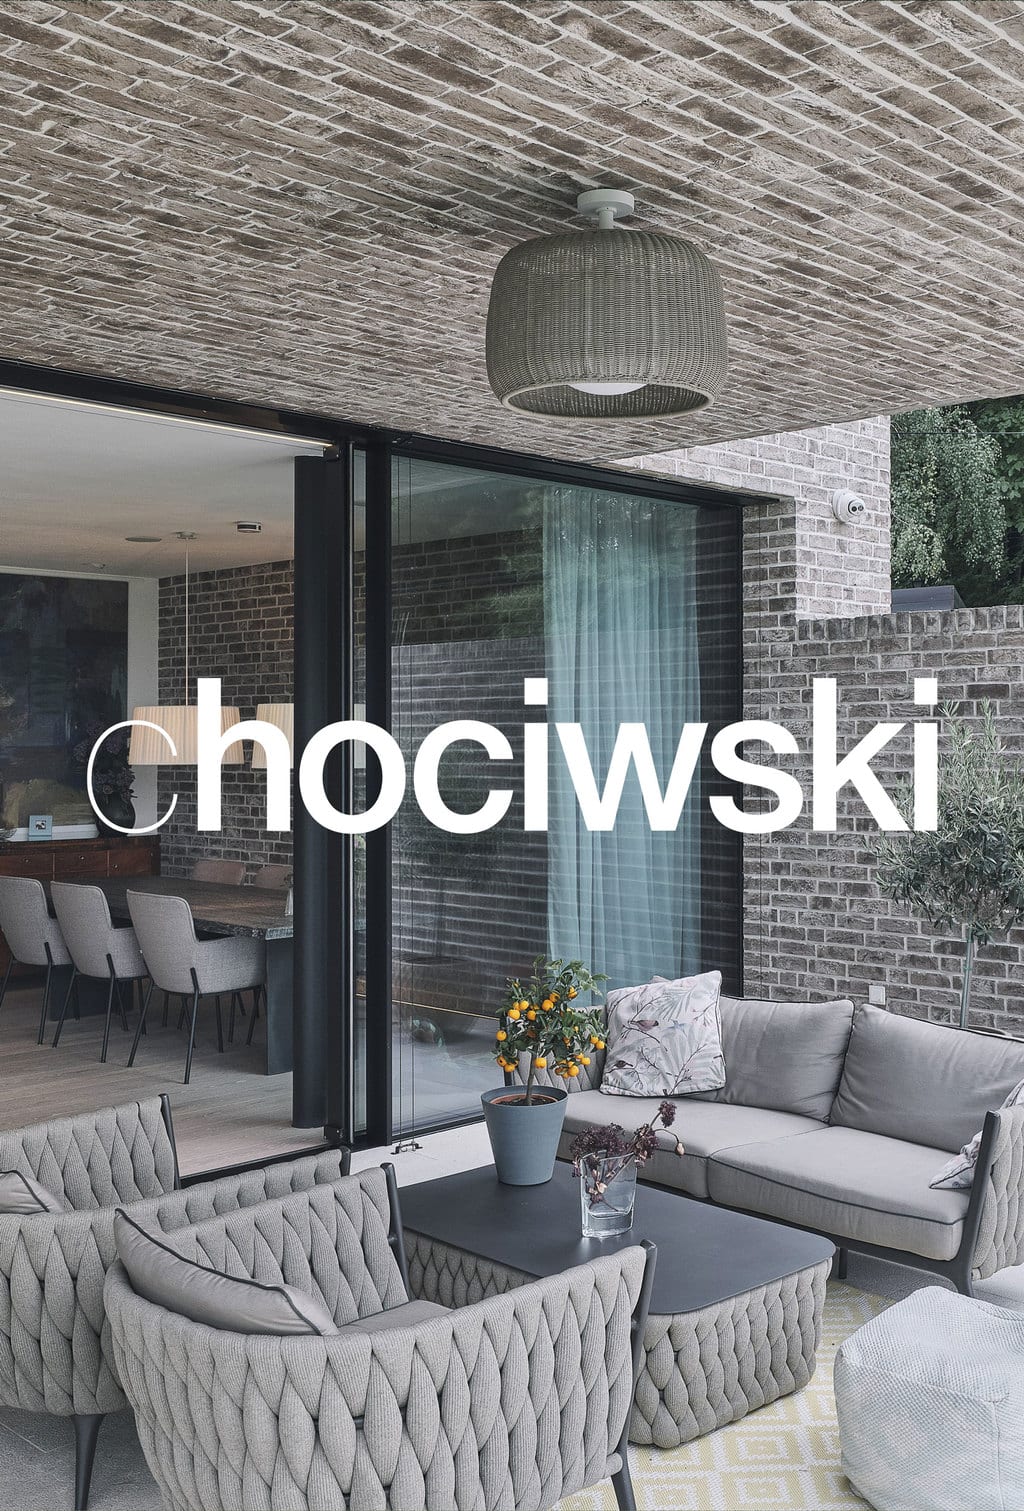 chociwski-logo-architektur_04